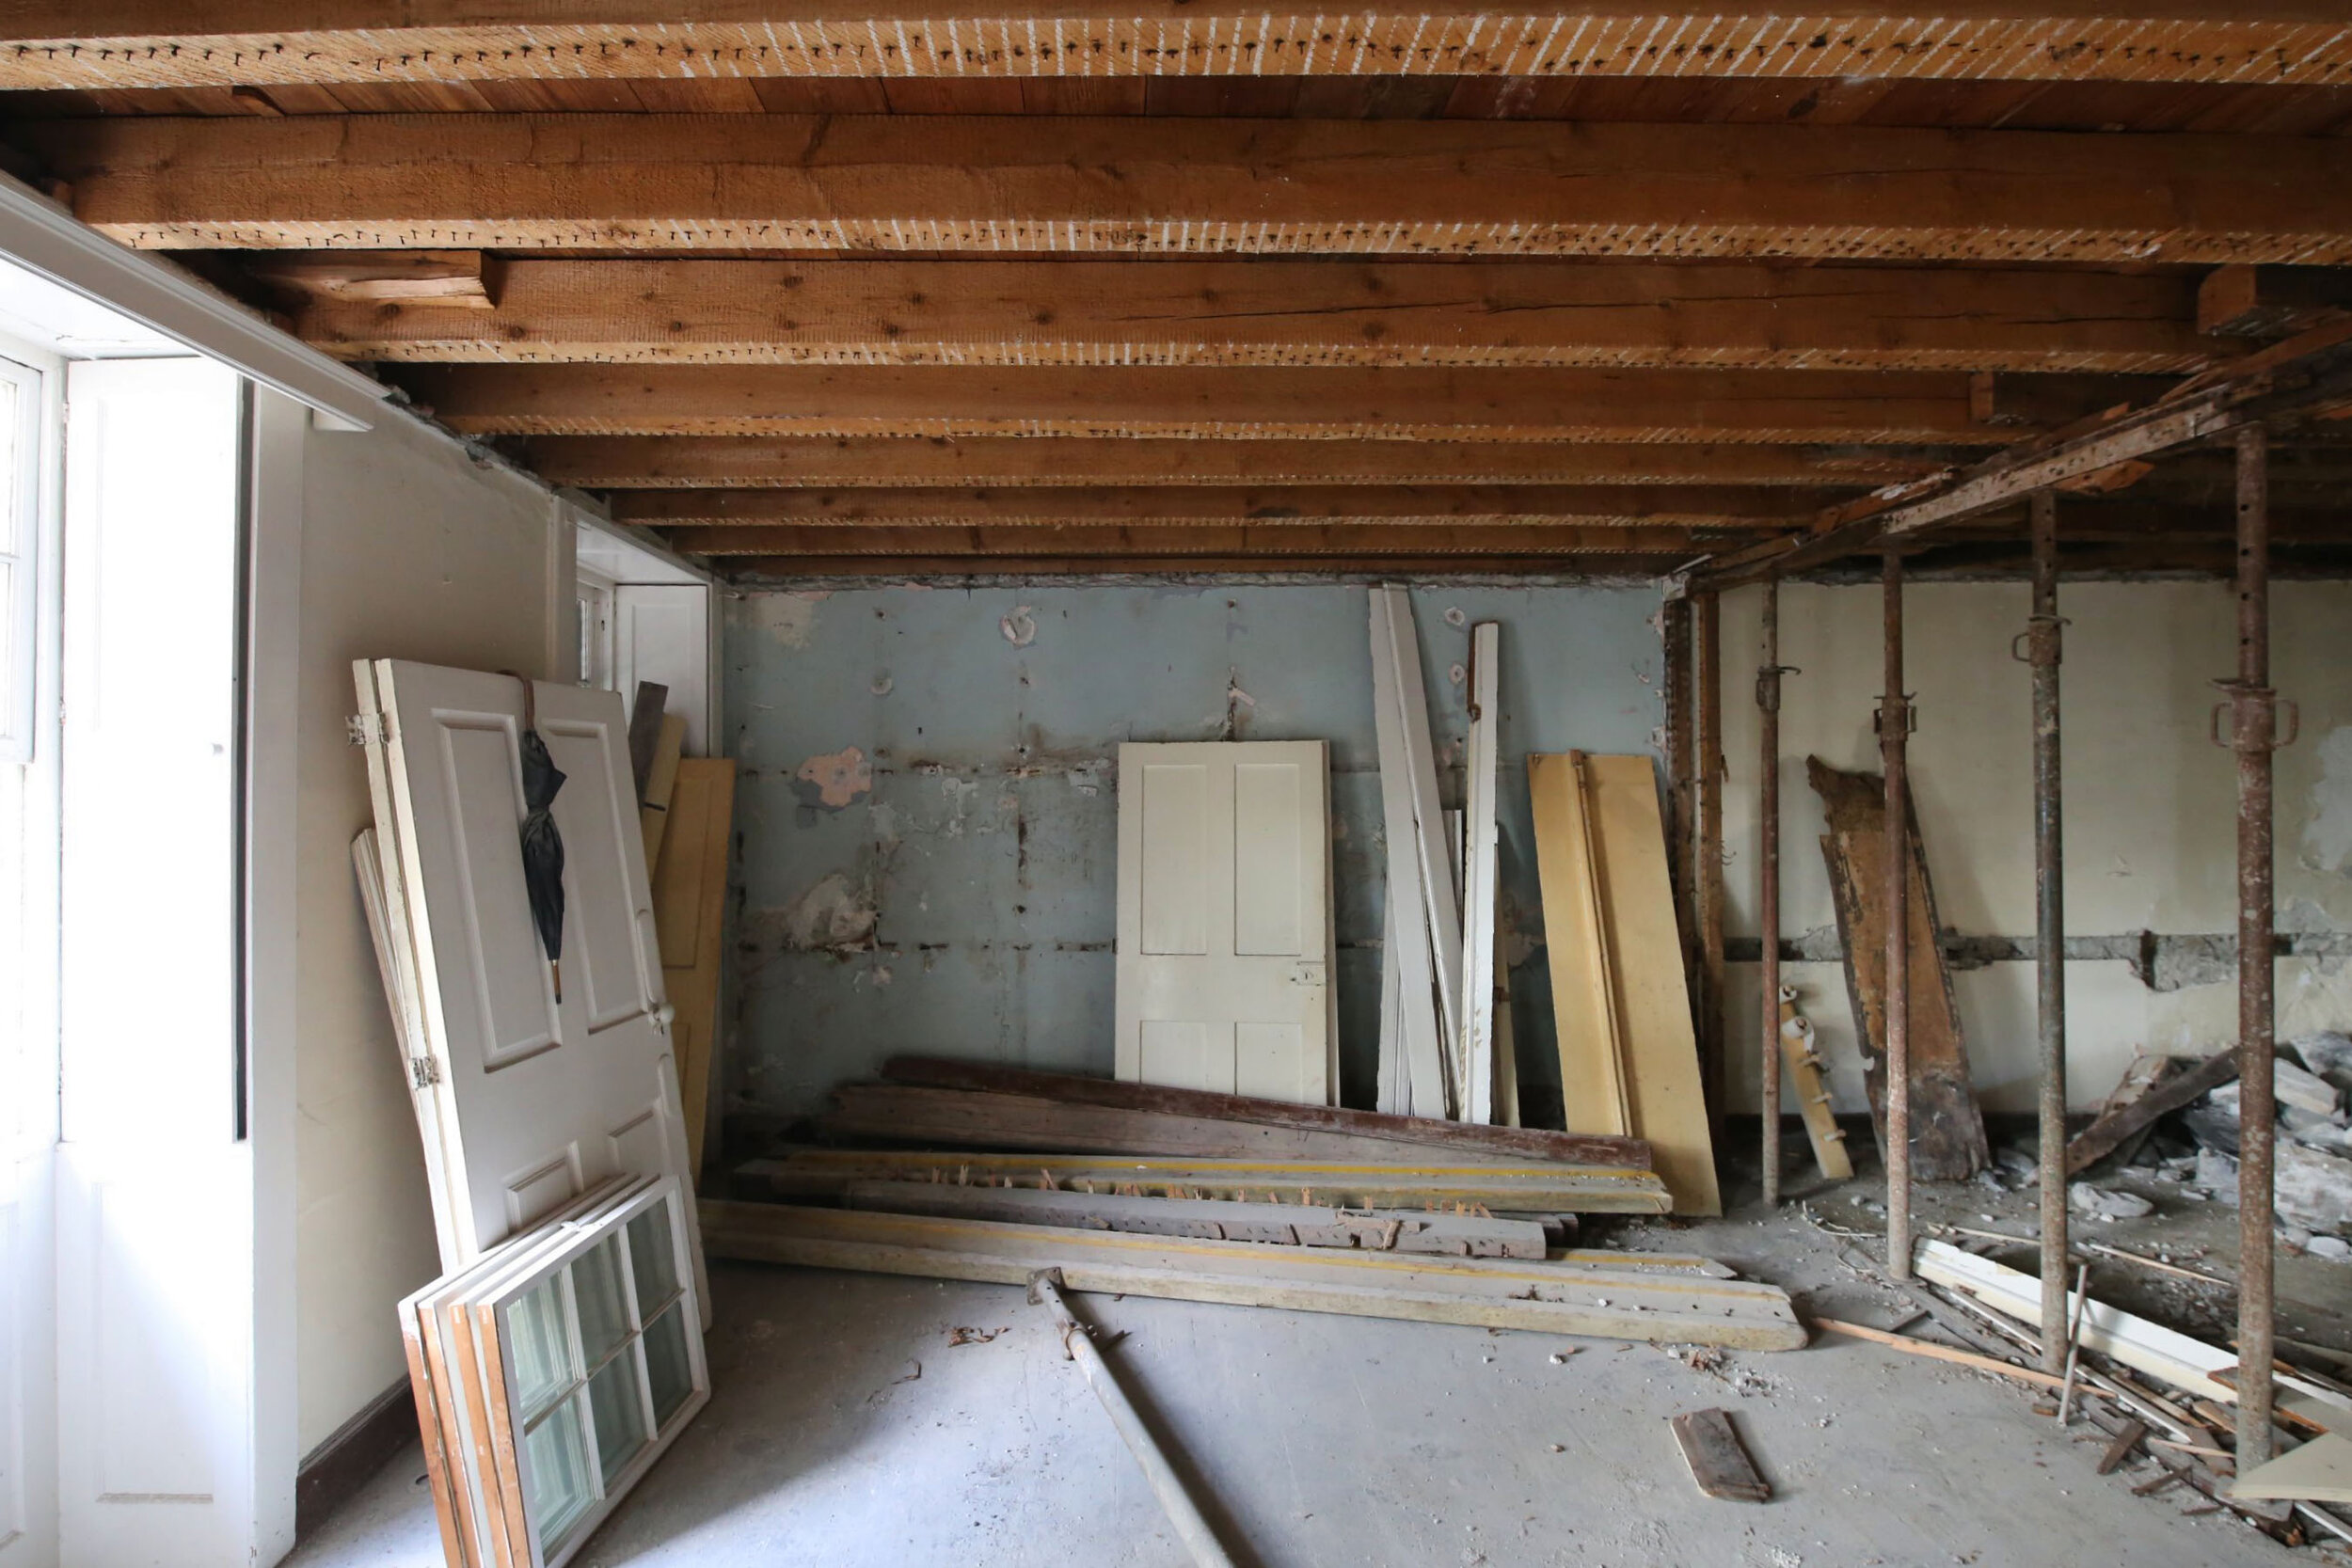 Renovation interior demolition (Copy)